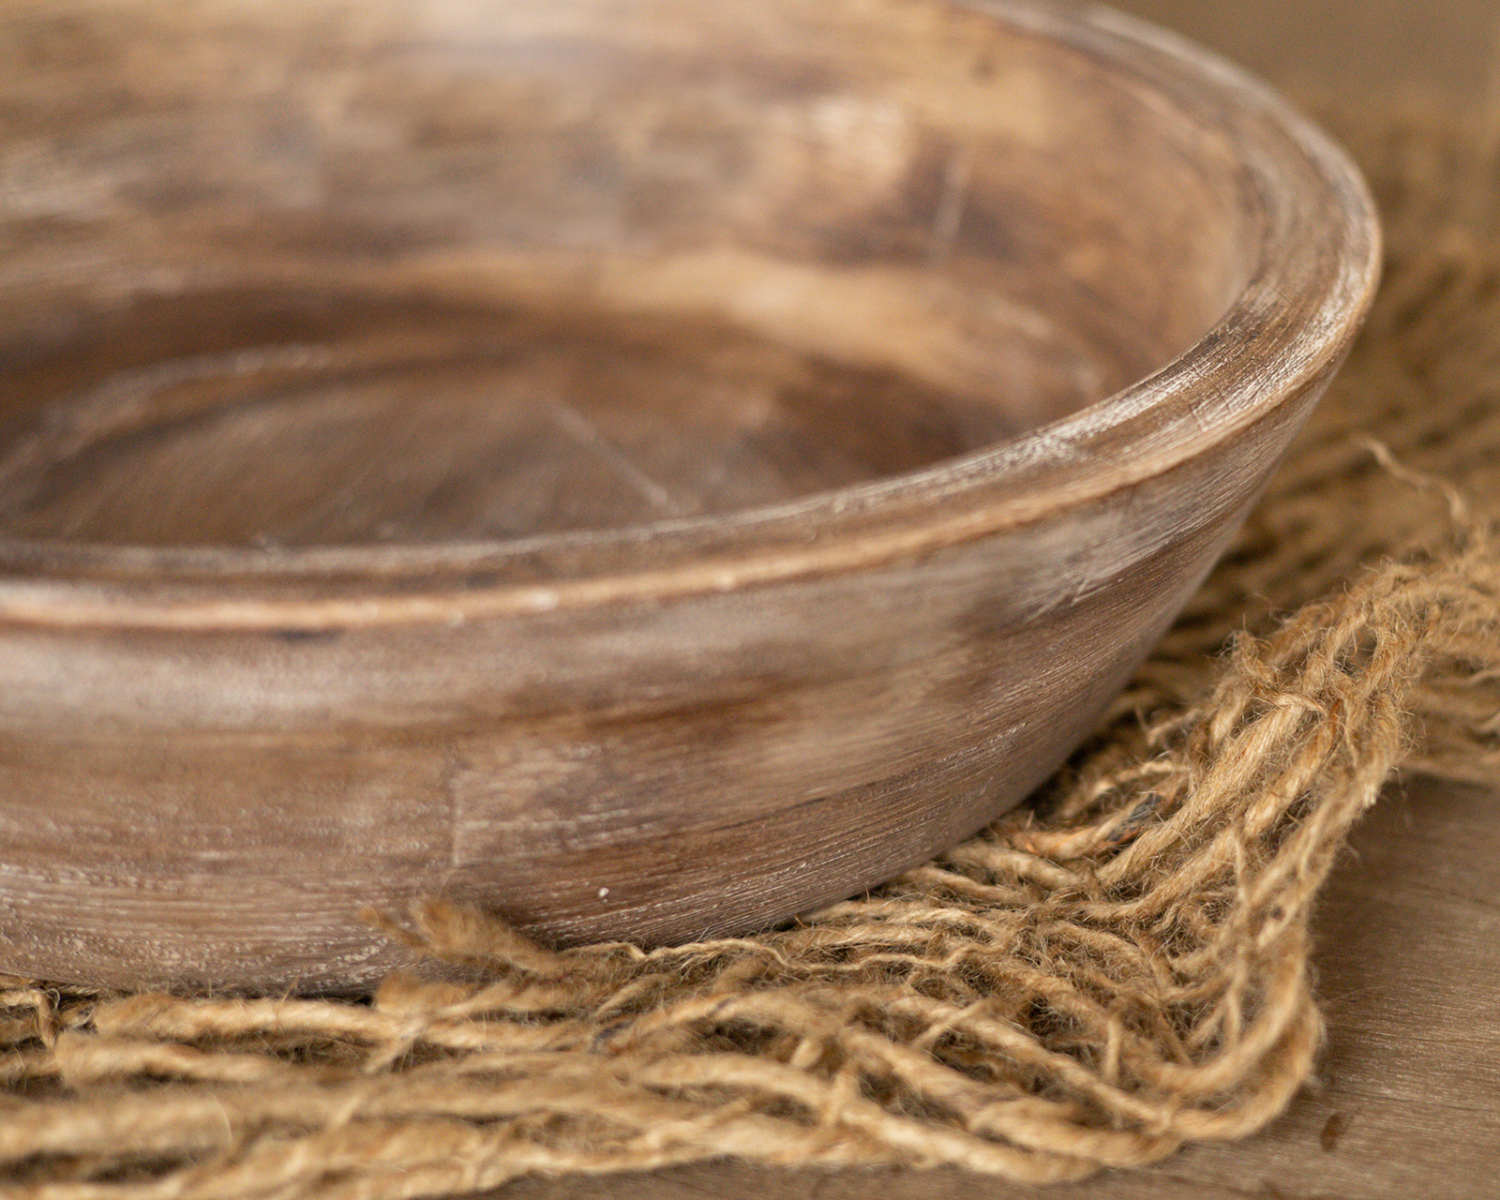 Brown round wooden bowl - 38cm